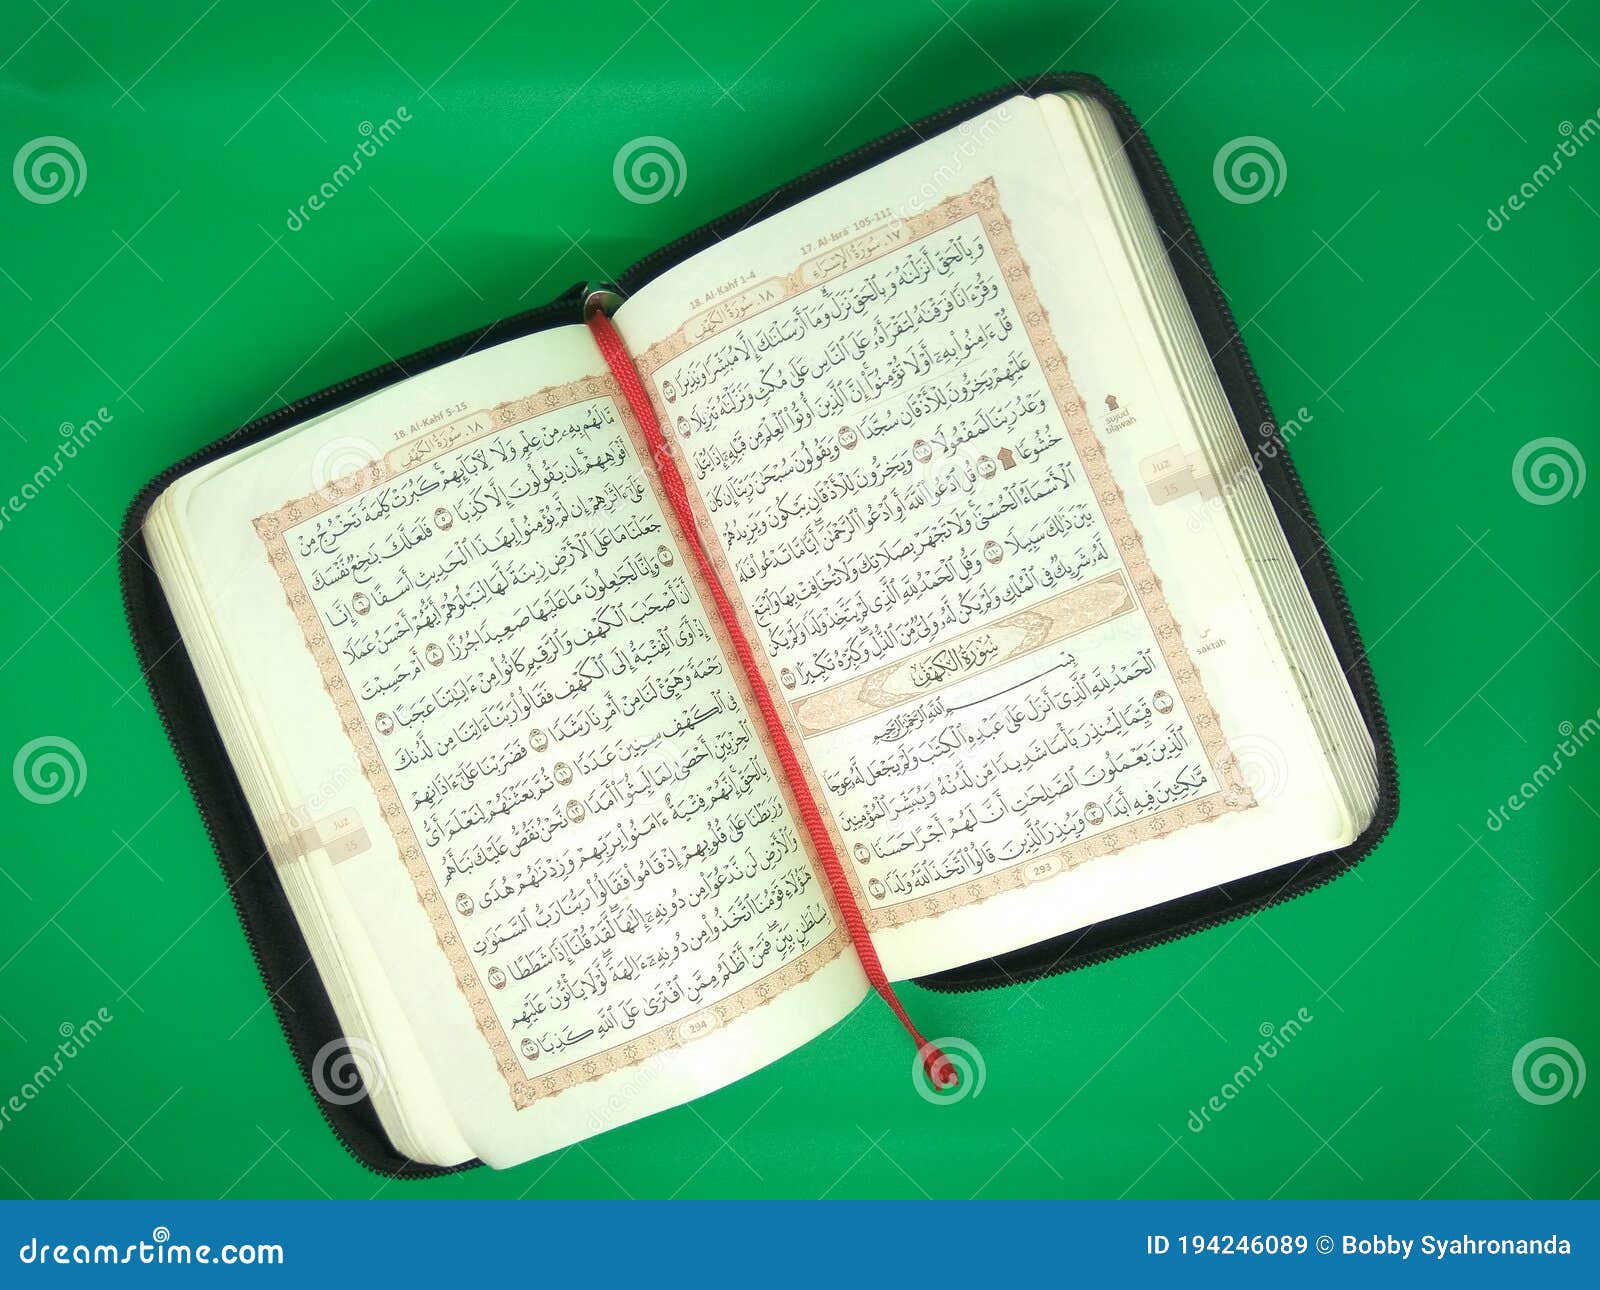 Mushaf Al-Quran là bản in đặc biệt của Quran, được đánh dấu kỹ càng và giữ trong sự tôn trọng cao độ. Hình ảnh này sẽ cho bạn cái nhìn tổng quan về những trang sách thiêng liêng này, từ hệ thống chữ viết đến cách sắp xếp các bài đọc trong đó.